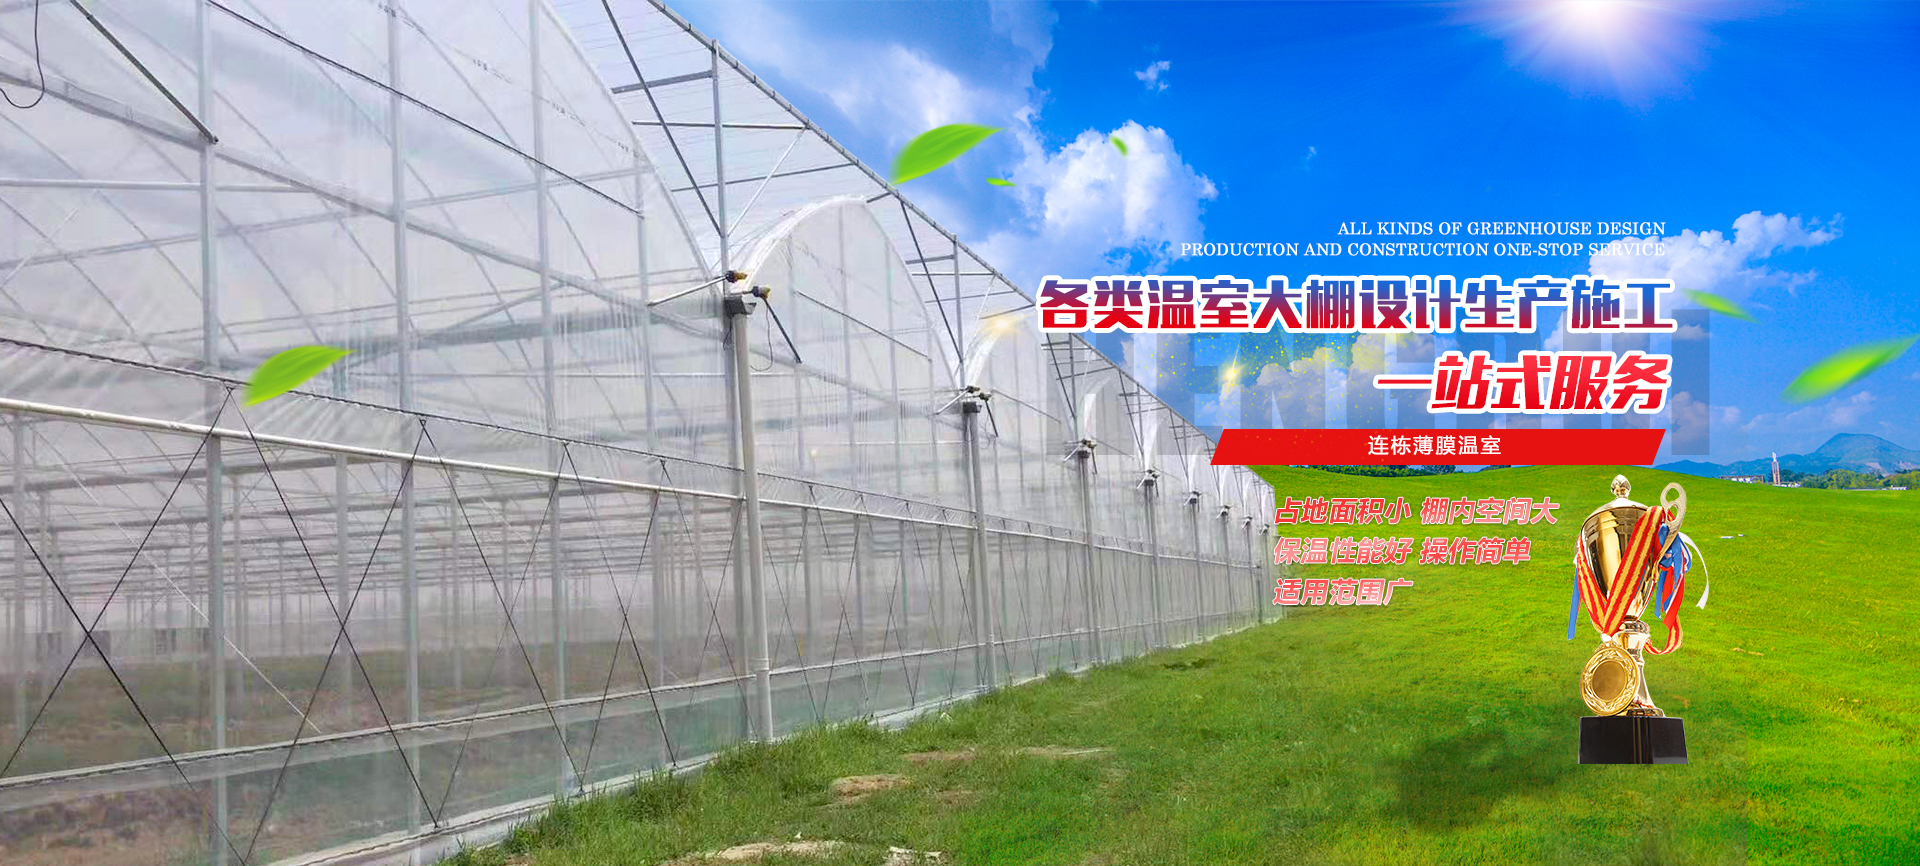 青州市瑞霖温室工程有限公司